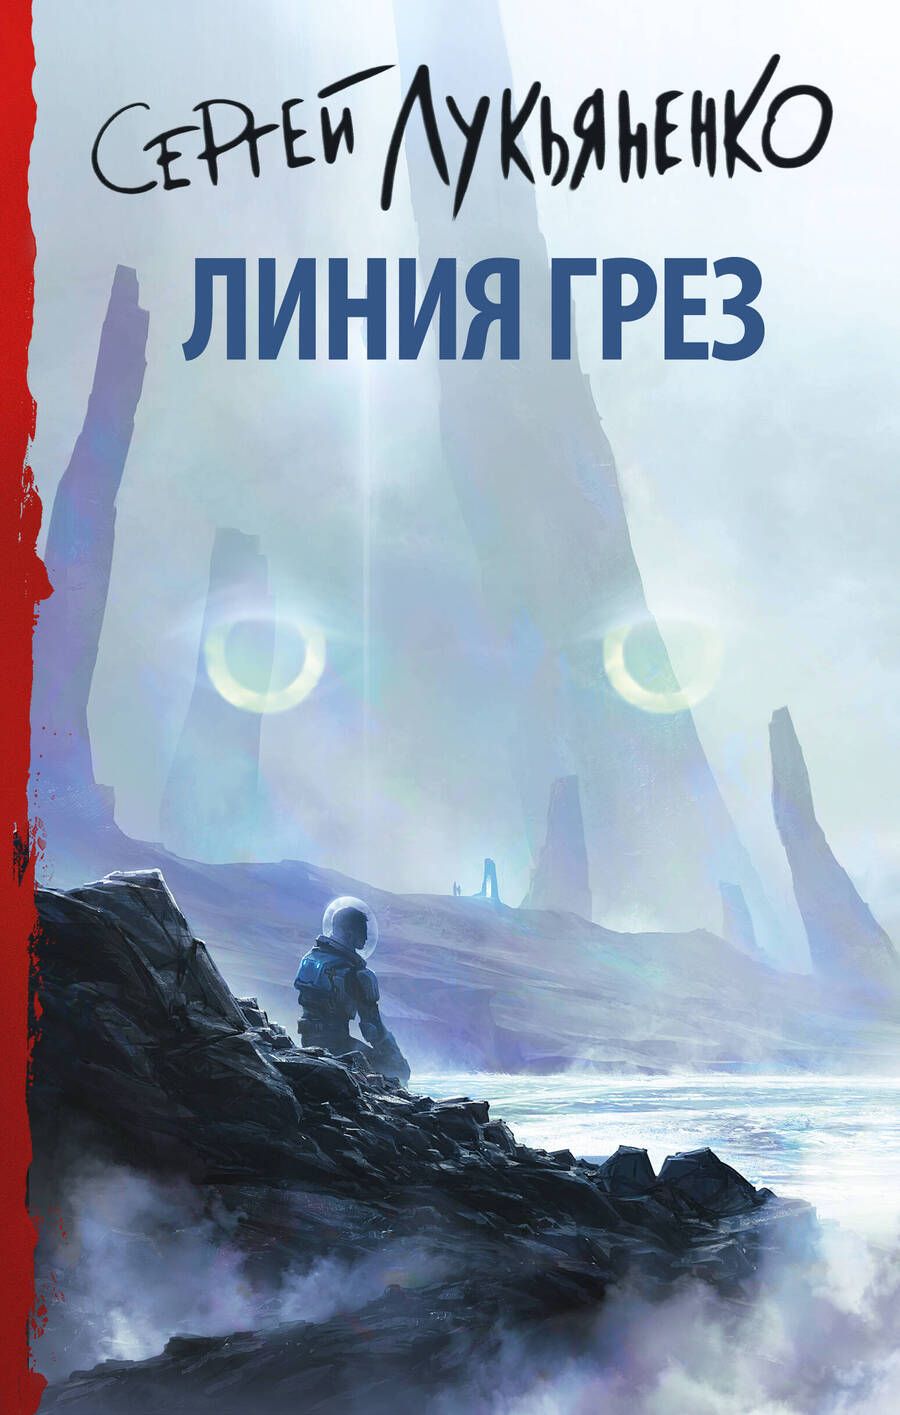 Обложка книги "Лукьяненко: Линия грез"